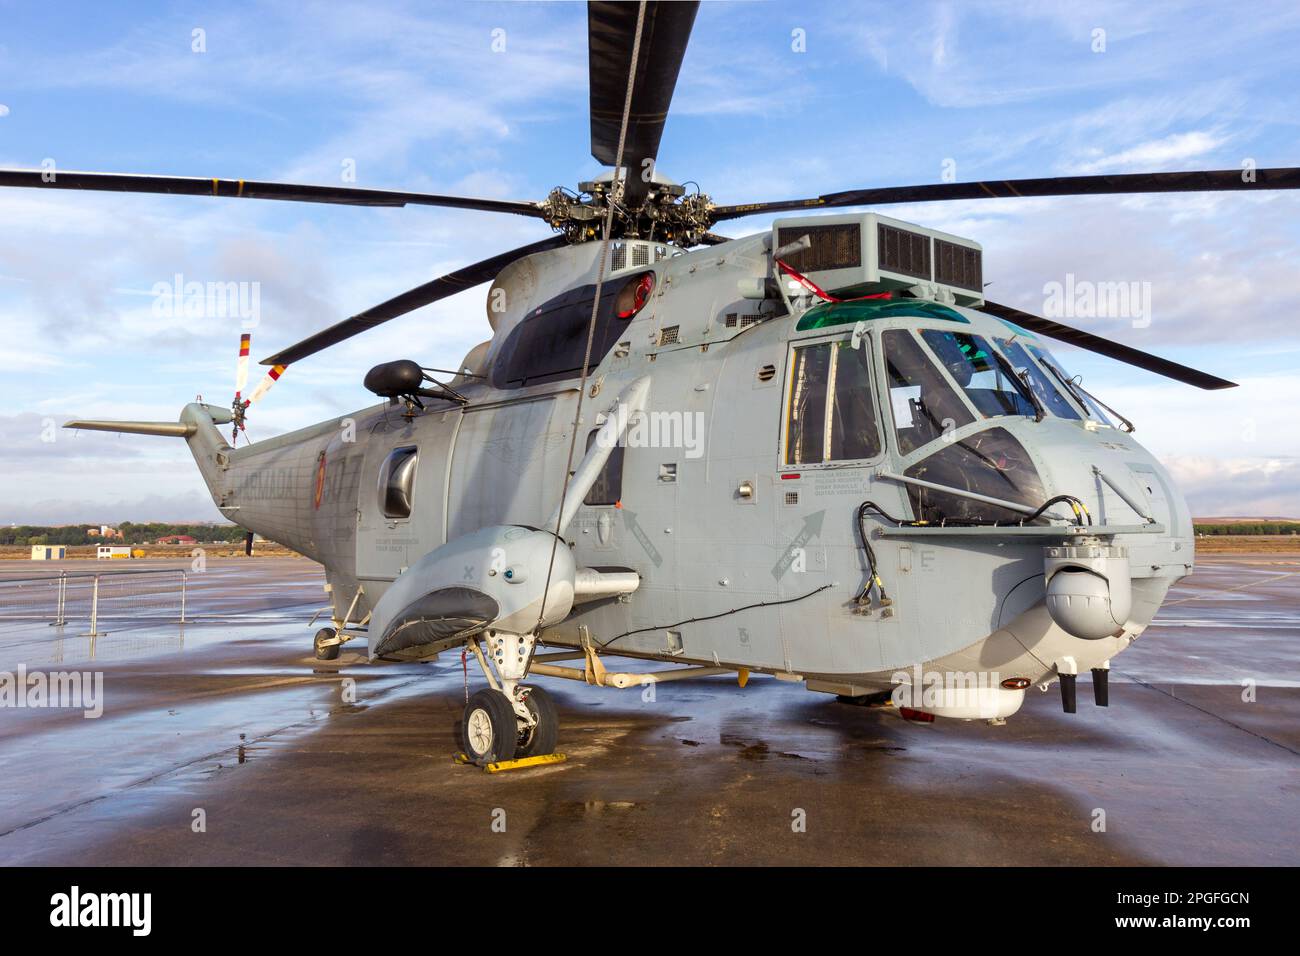 Hélicoptère de sauvetage Sea King Sikorsky SH-3D de la marine espagnole. Torrejon, Espagne - 11 octobre 2014 Banque D'Images